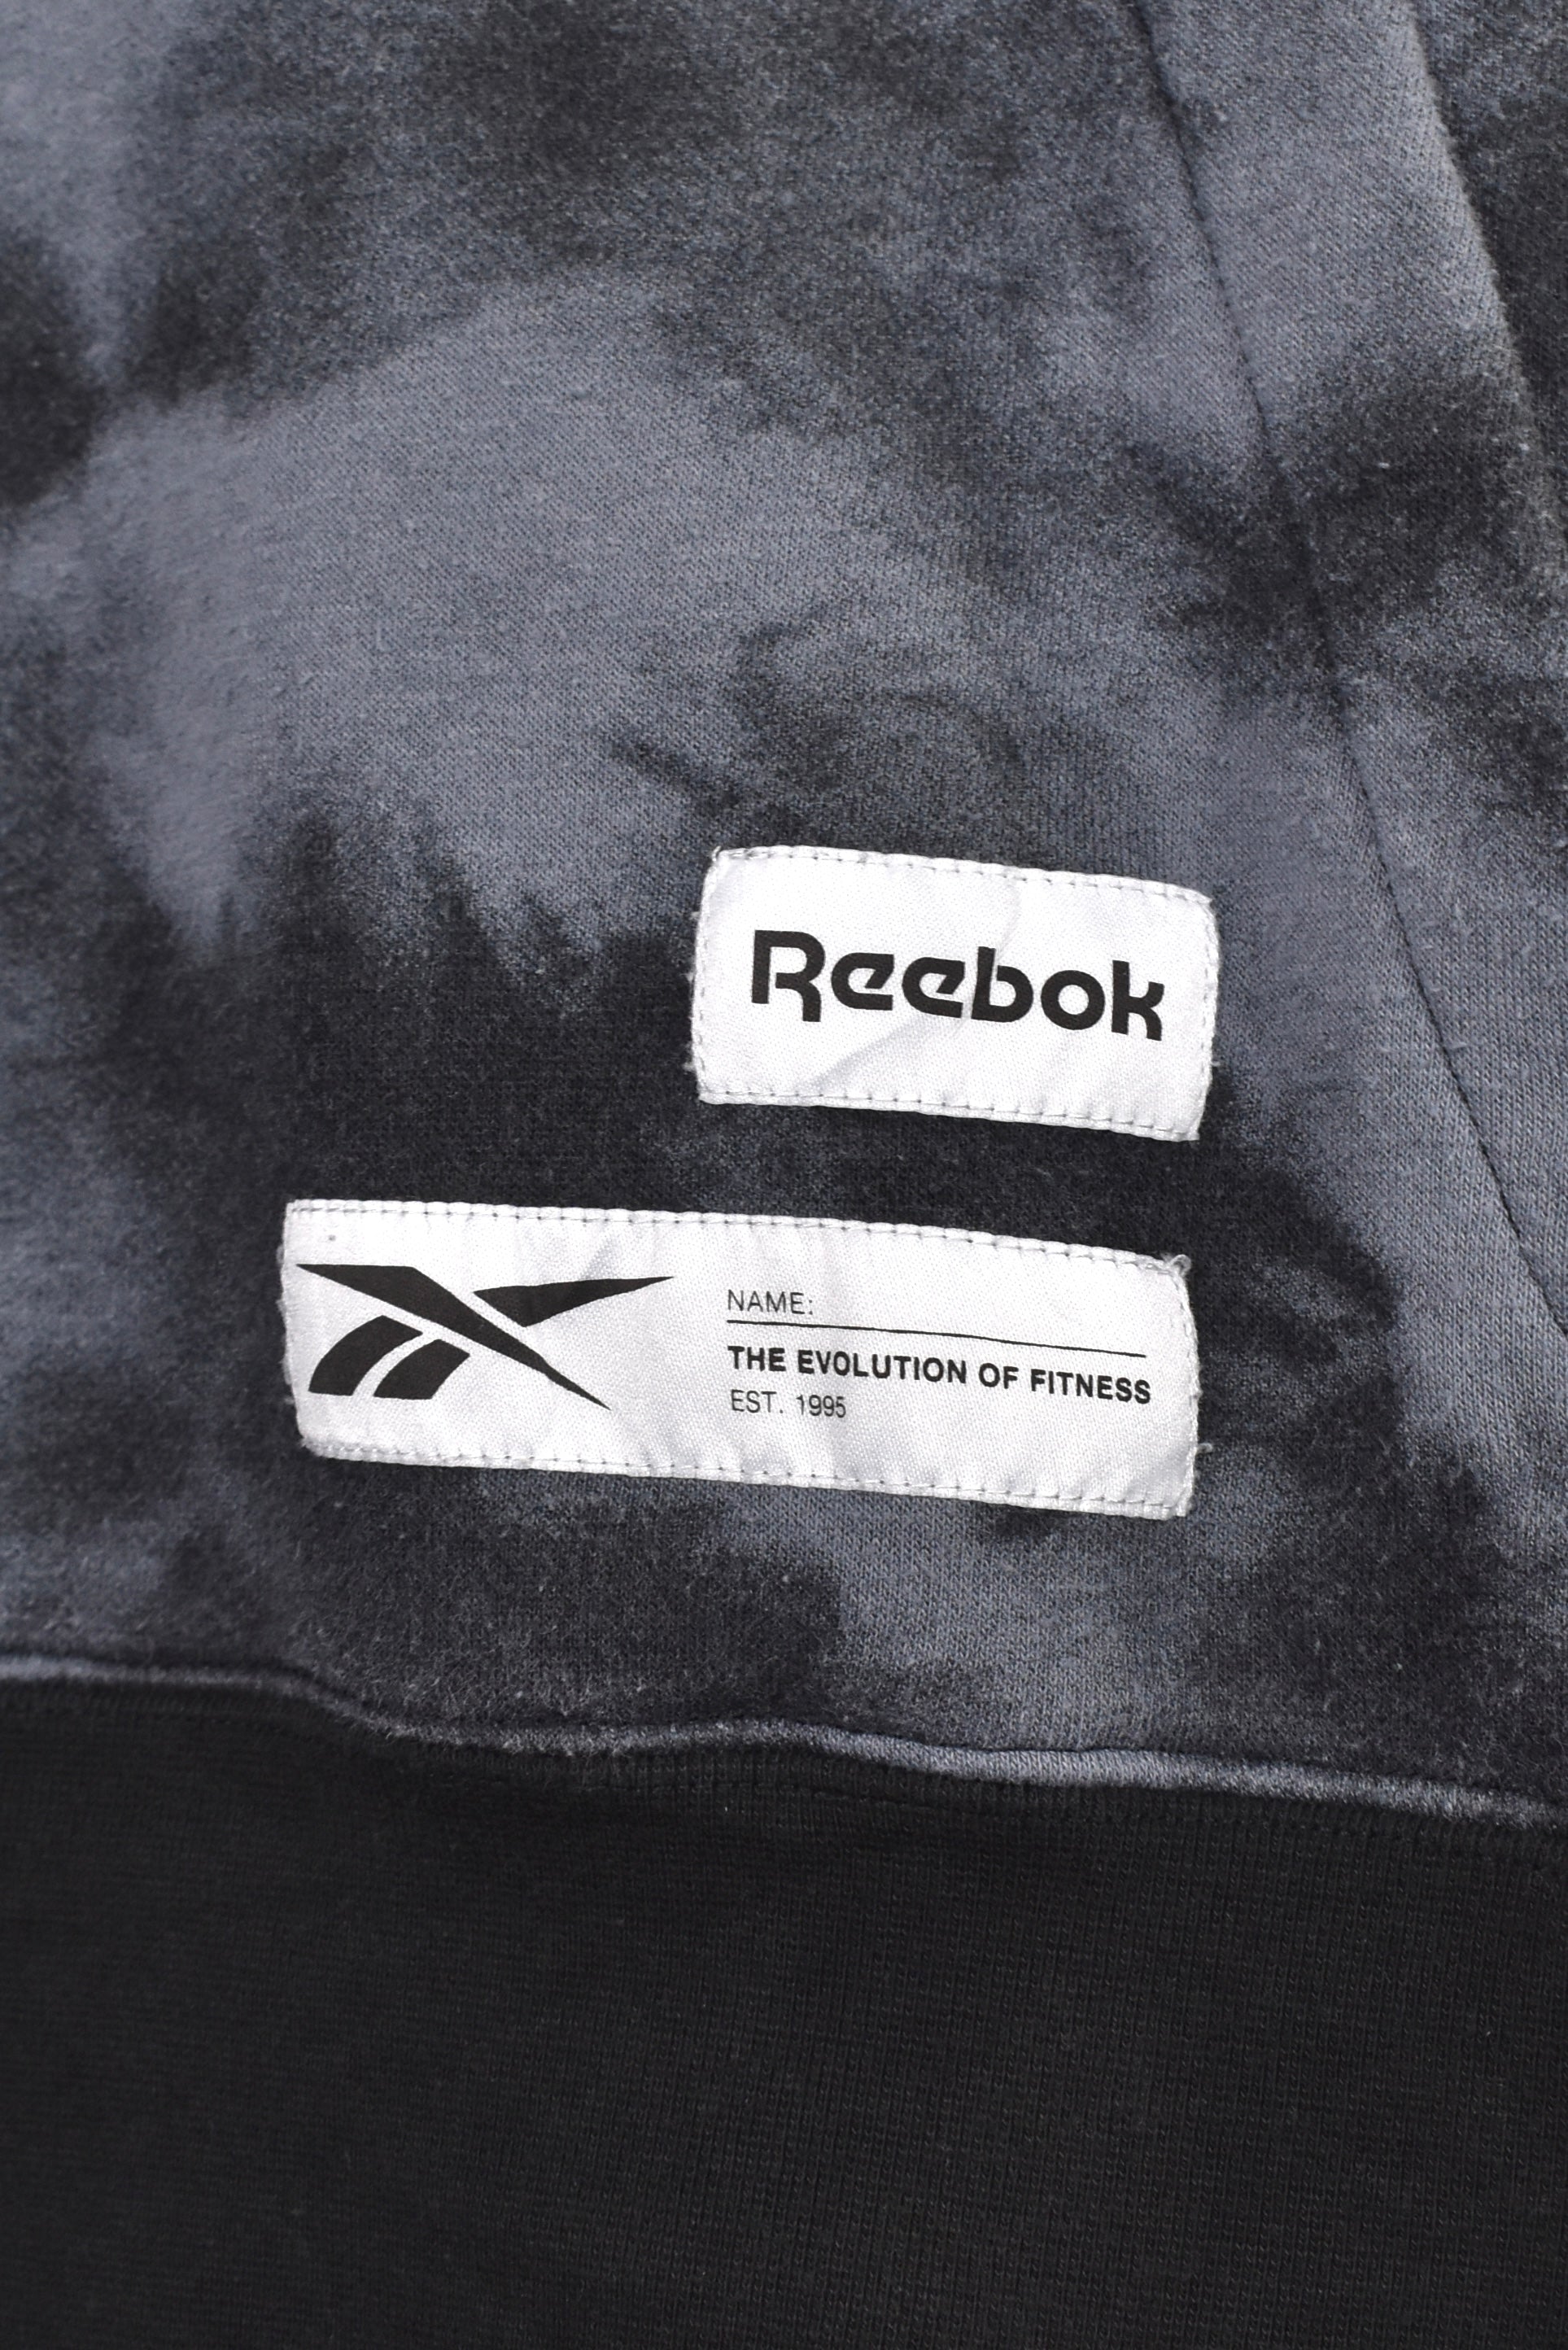 Modern Reebok hoodie (XL), grey tie dye sweatshirt